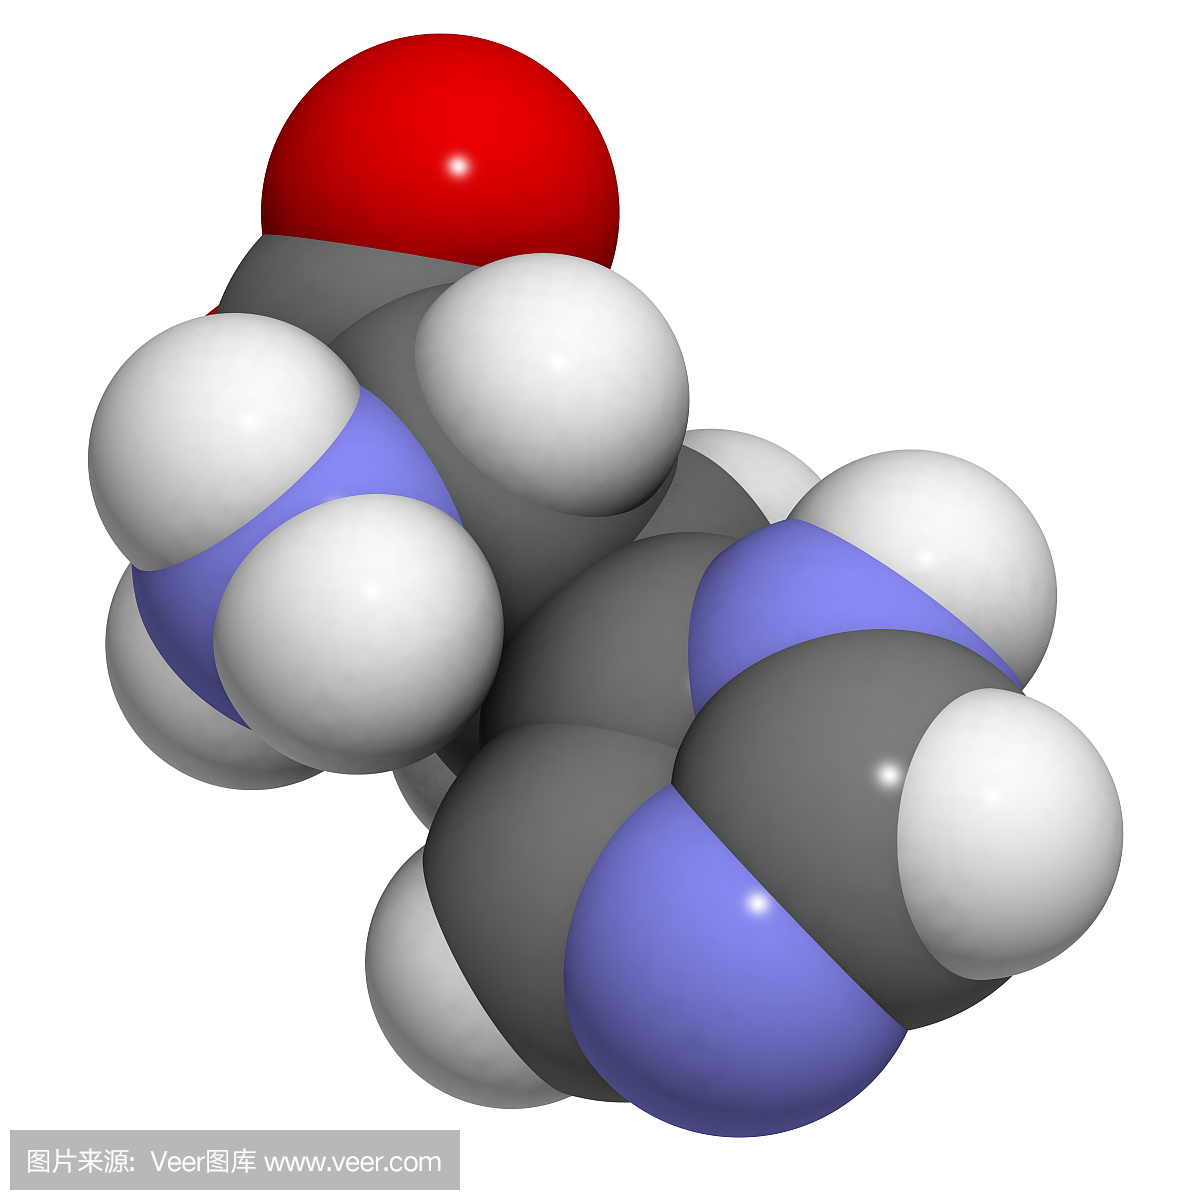 组氨酸(His,H)氨基酸,分子模型。